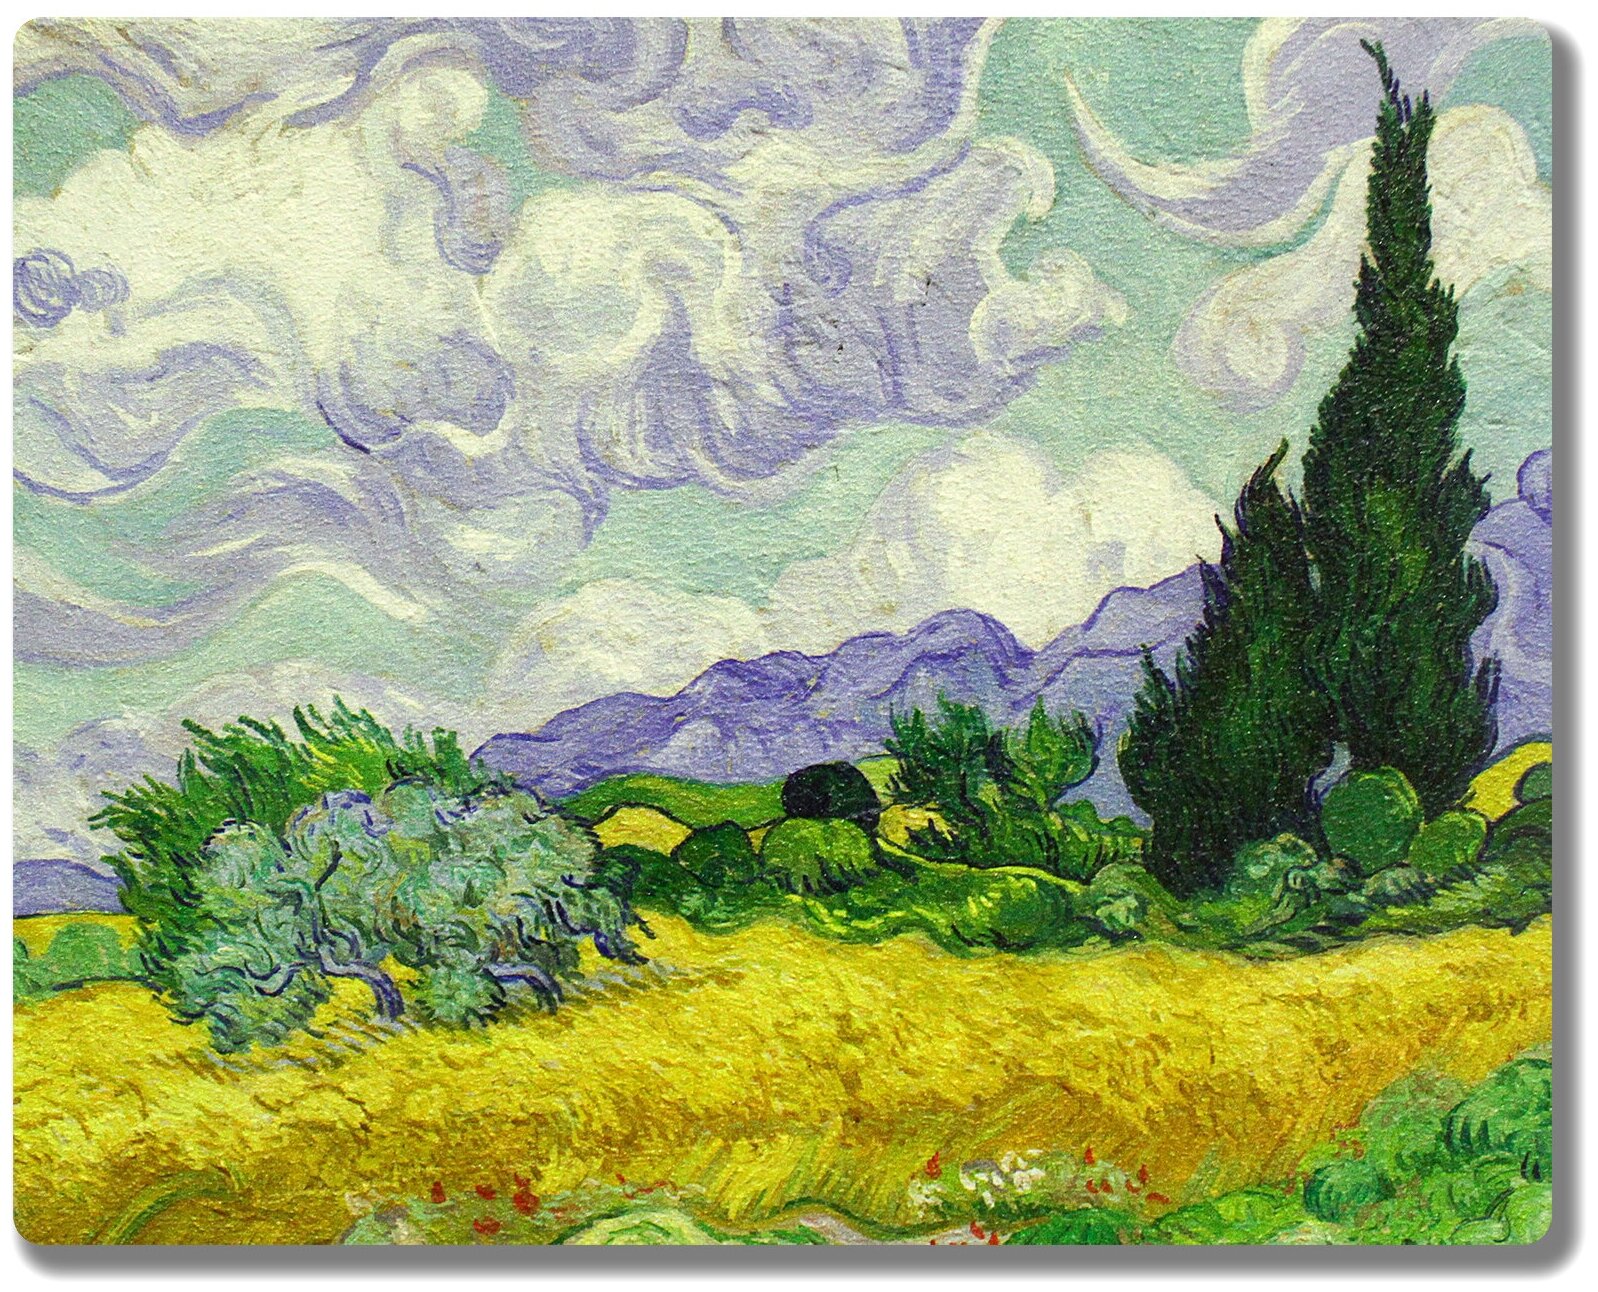 Репродукция картины Винсента Ван Гога "Пшеничное поле с кипарисами". Интерьерная фреска на доске. 30х24см